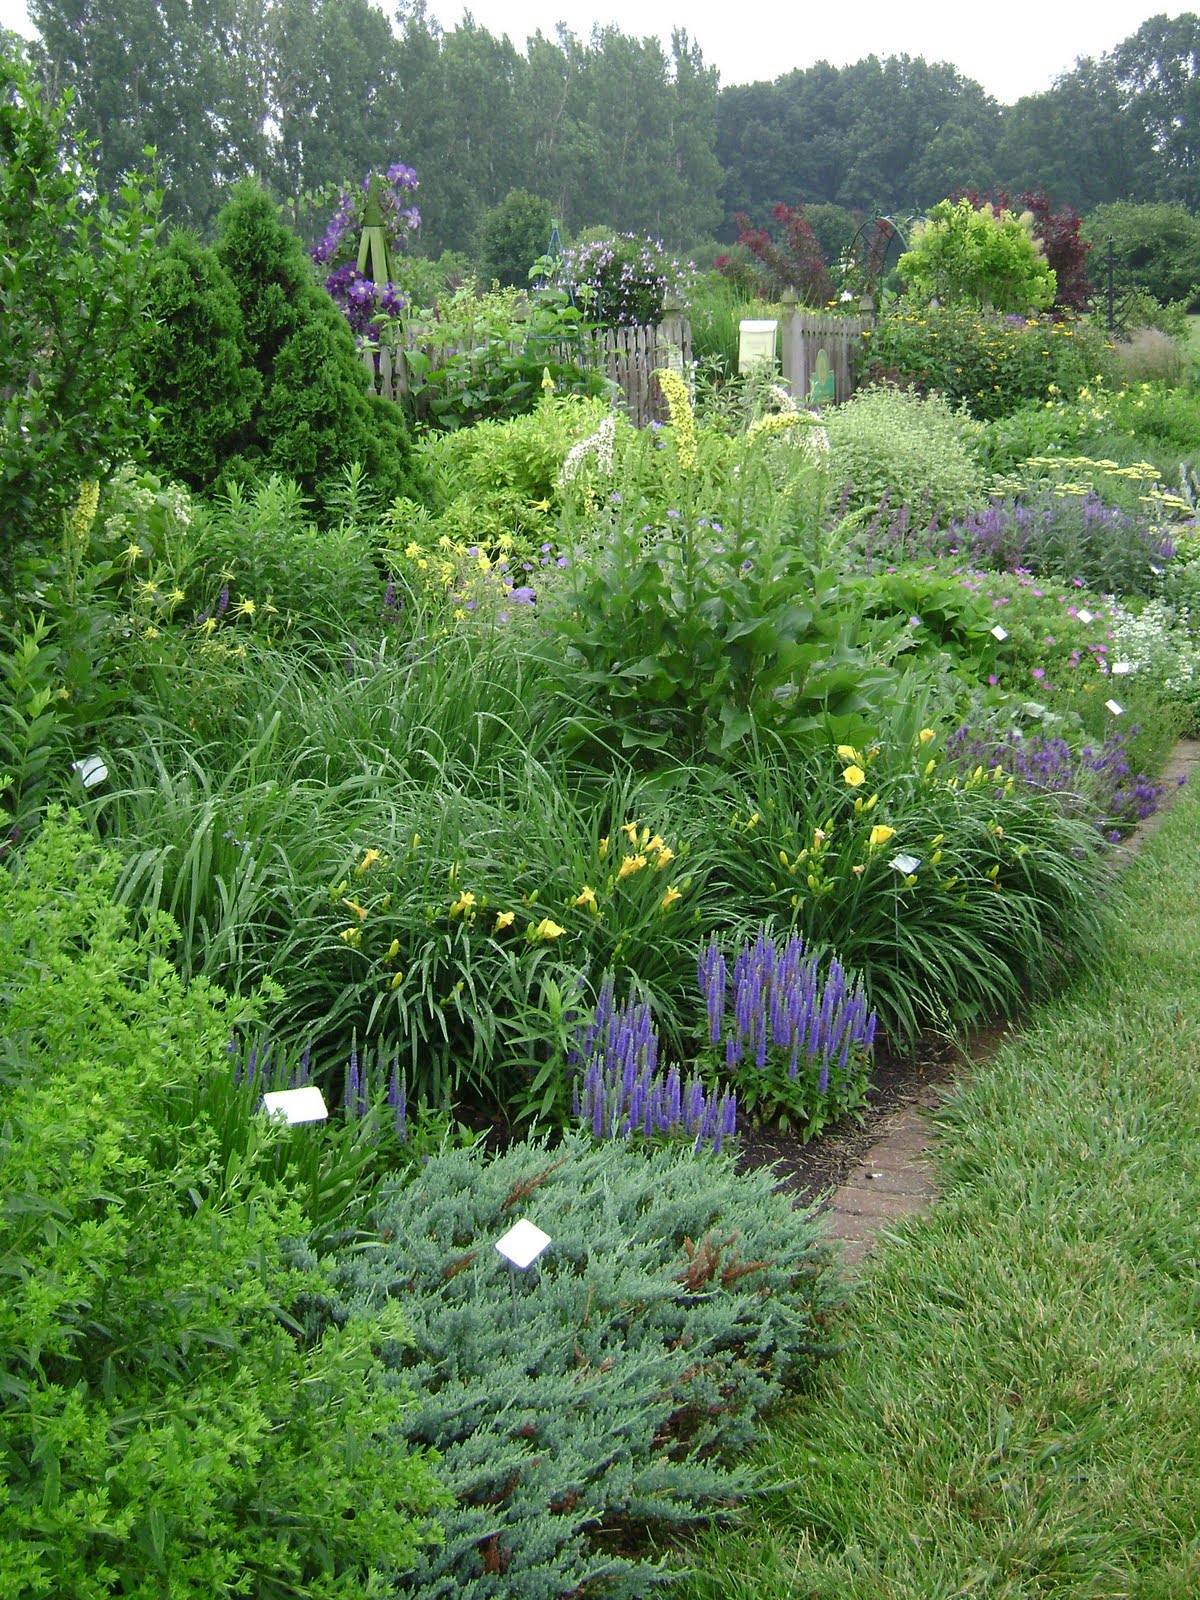 Prairie Roses Garden: Ideas Galore in the Idea Garden